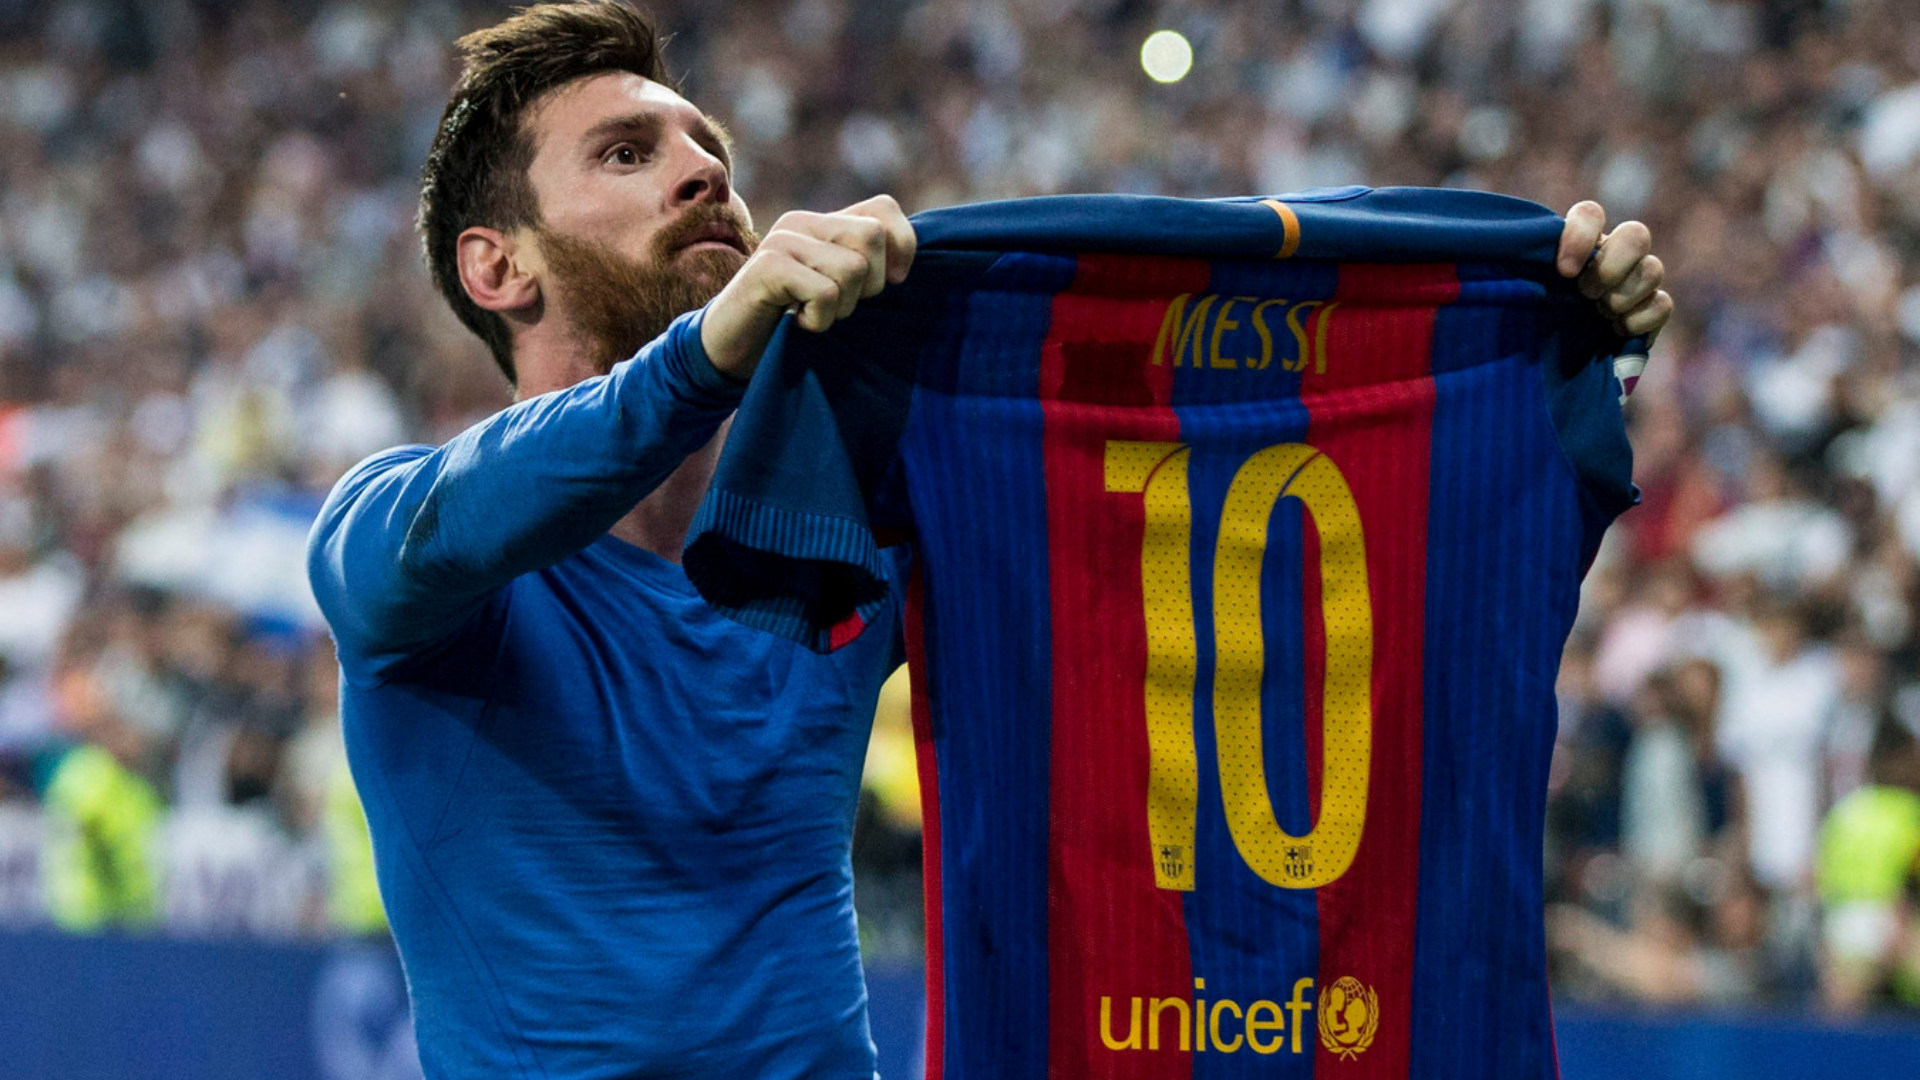 Messi'nin formasını gösterdiği bir görsel.